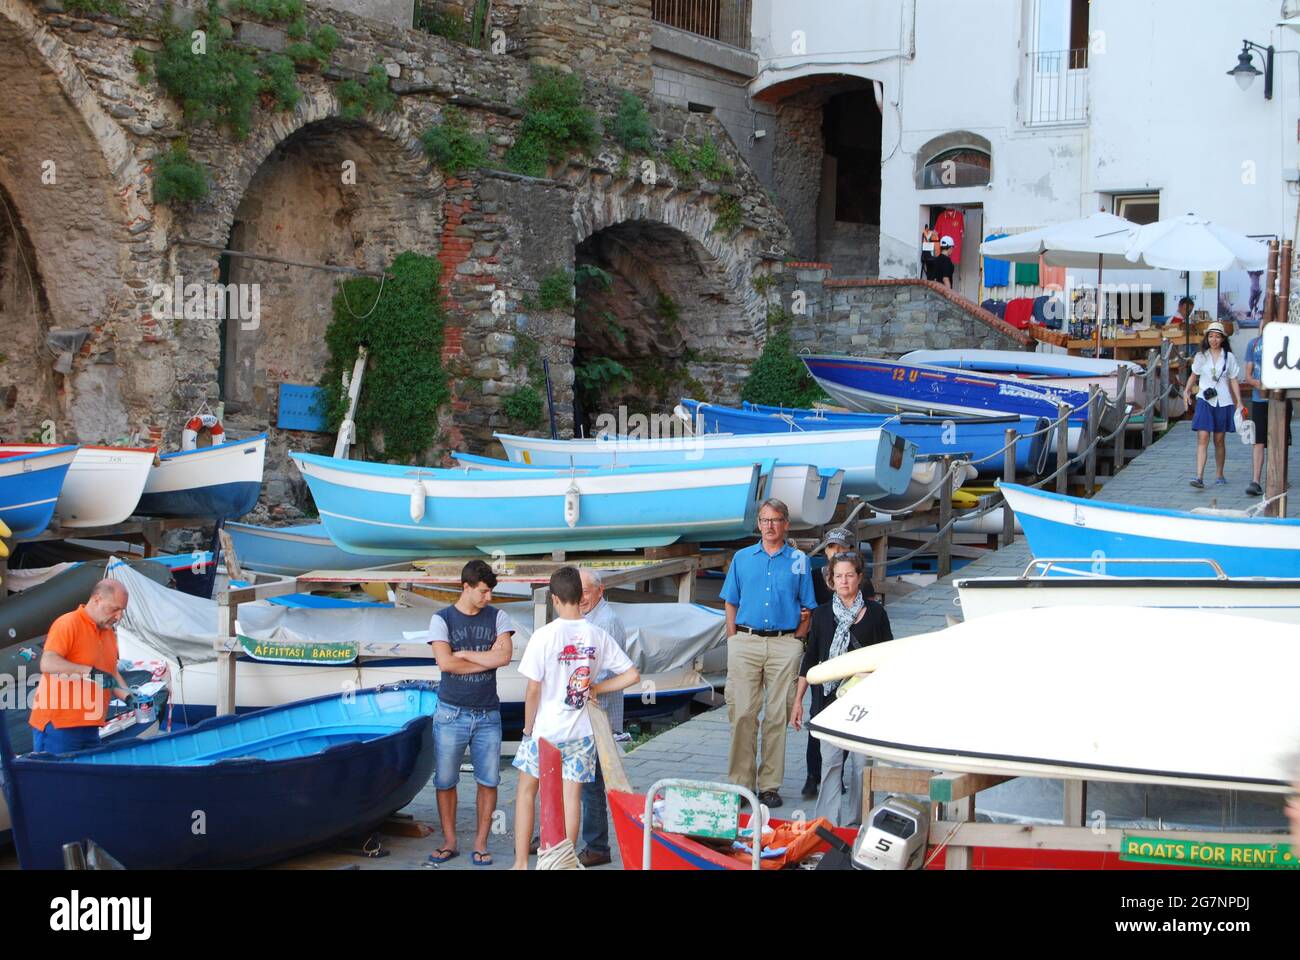 Cinque Terre Italia: Monterosso, Vernazza, Corniglia, Manarola y Riomaggiore. Cinque Terre, cinco ciudades, es una cadena de cinco pueblos pesqueros. Foto de stock